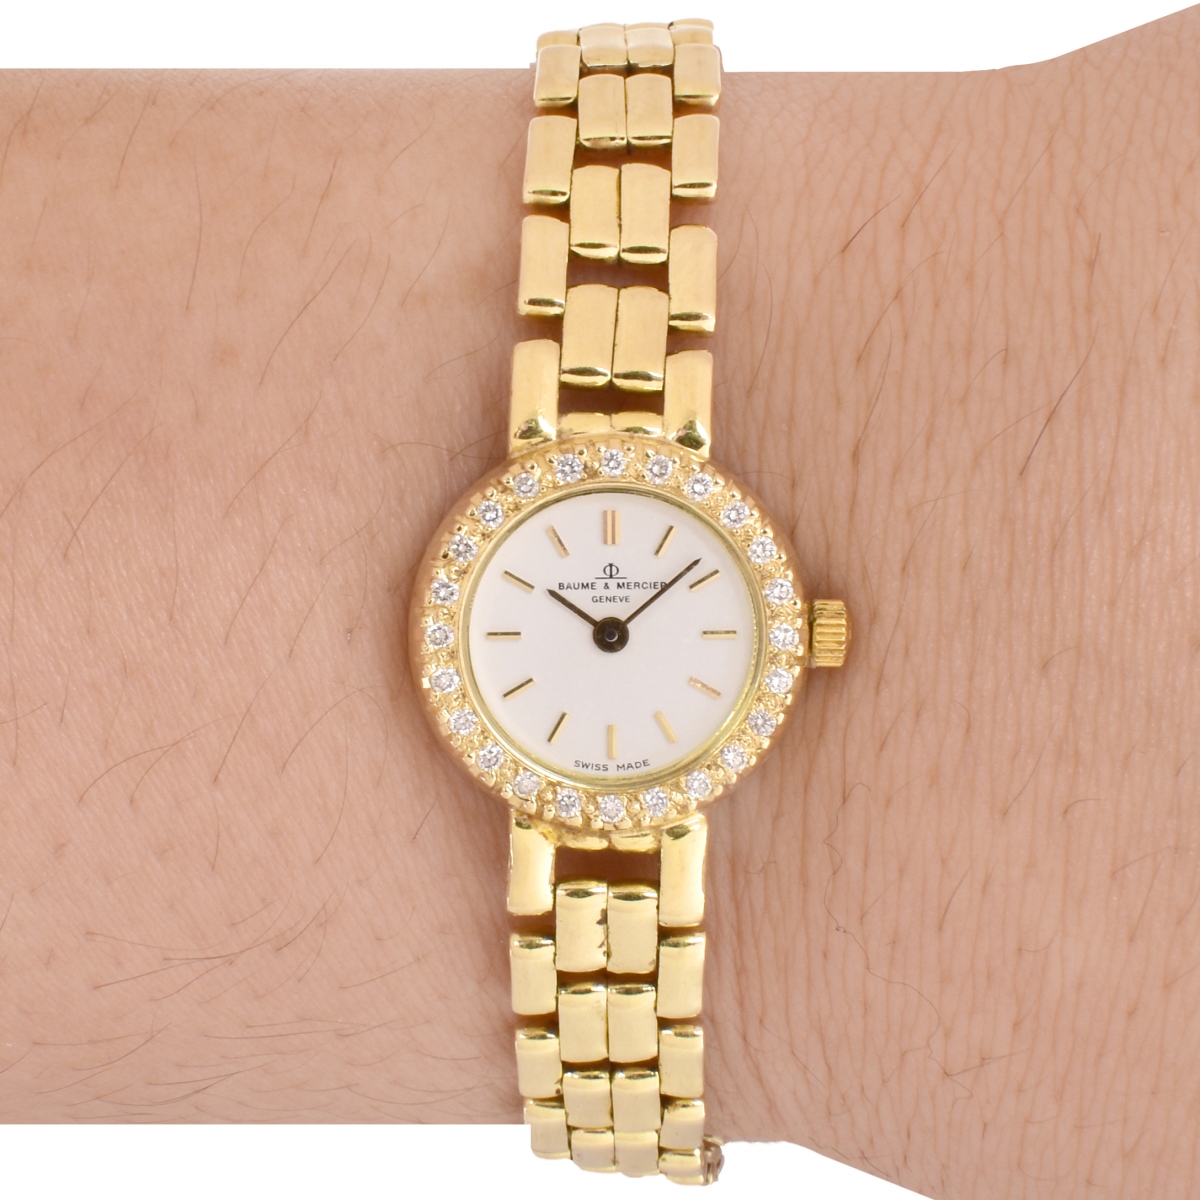 Lady's Baume & Mercier Watch